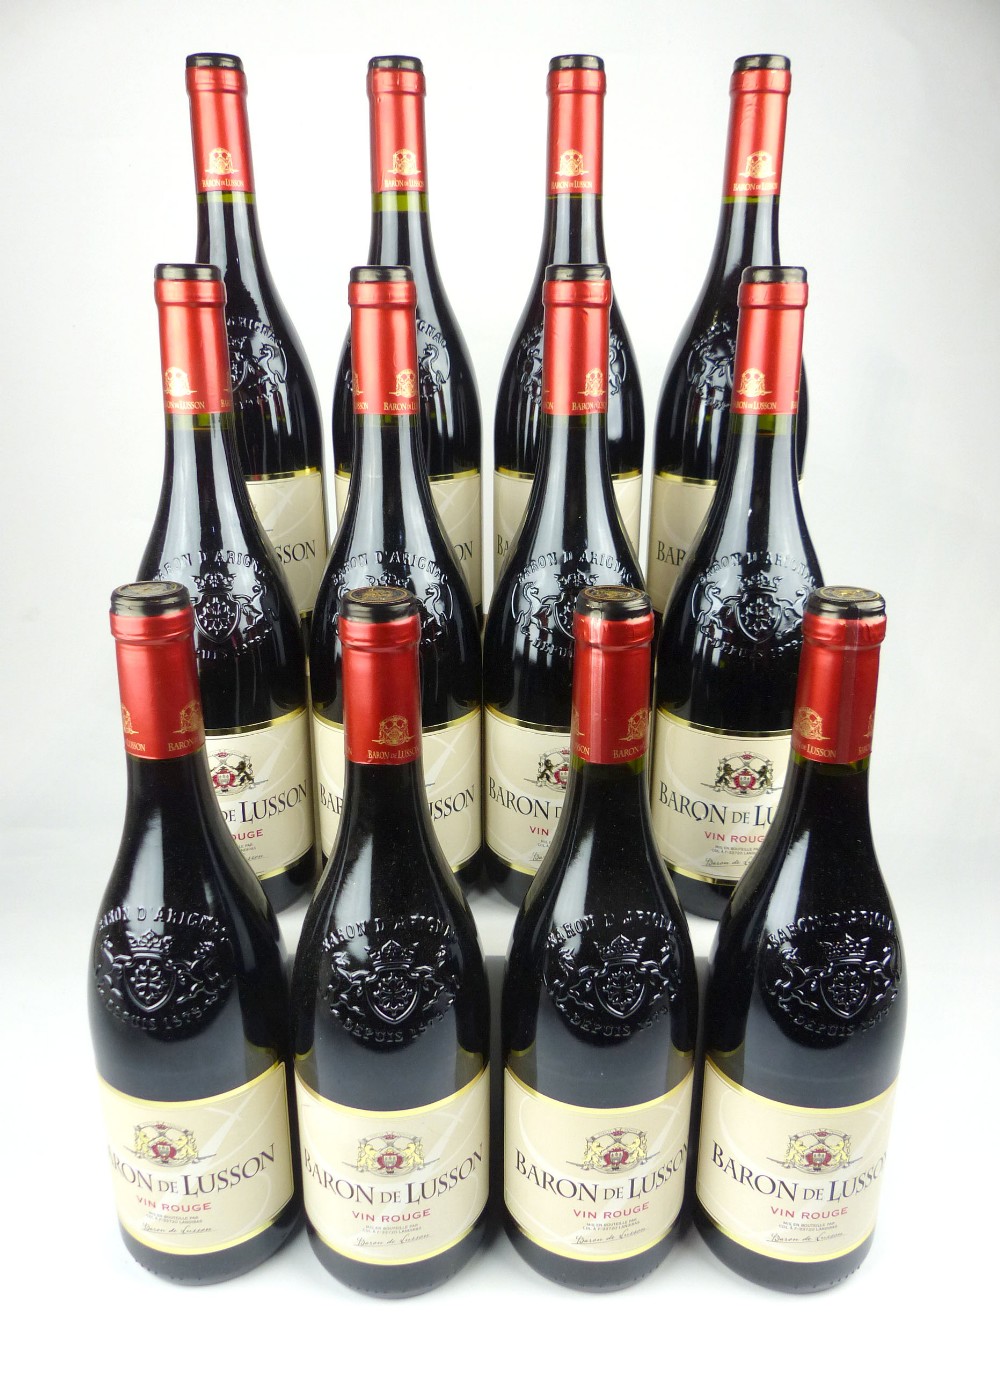 Twelve bottles of Baron De Lusson Vin Rouge